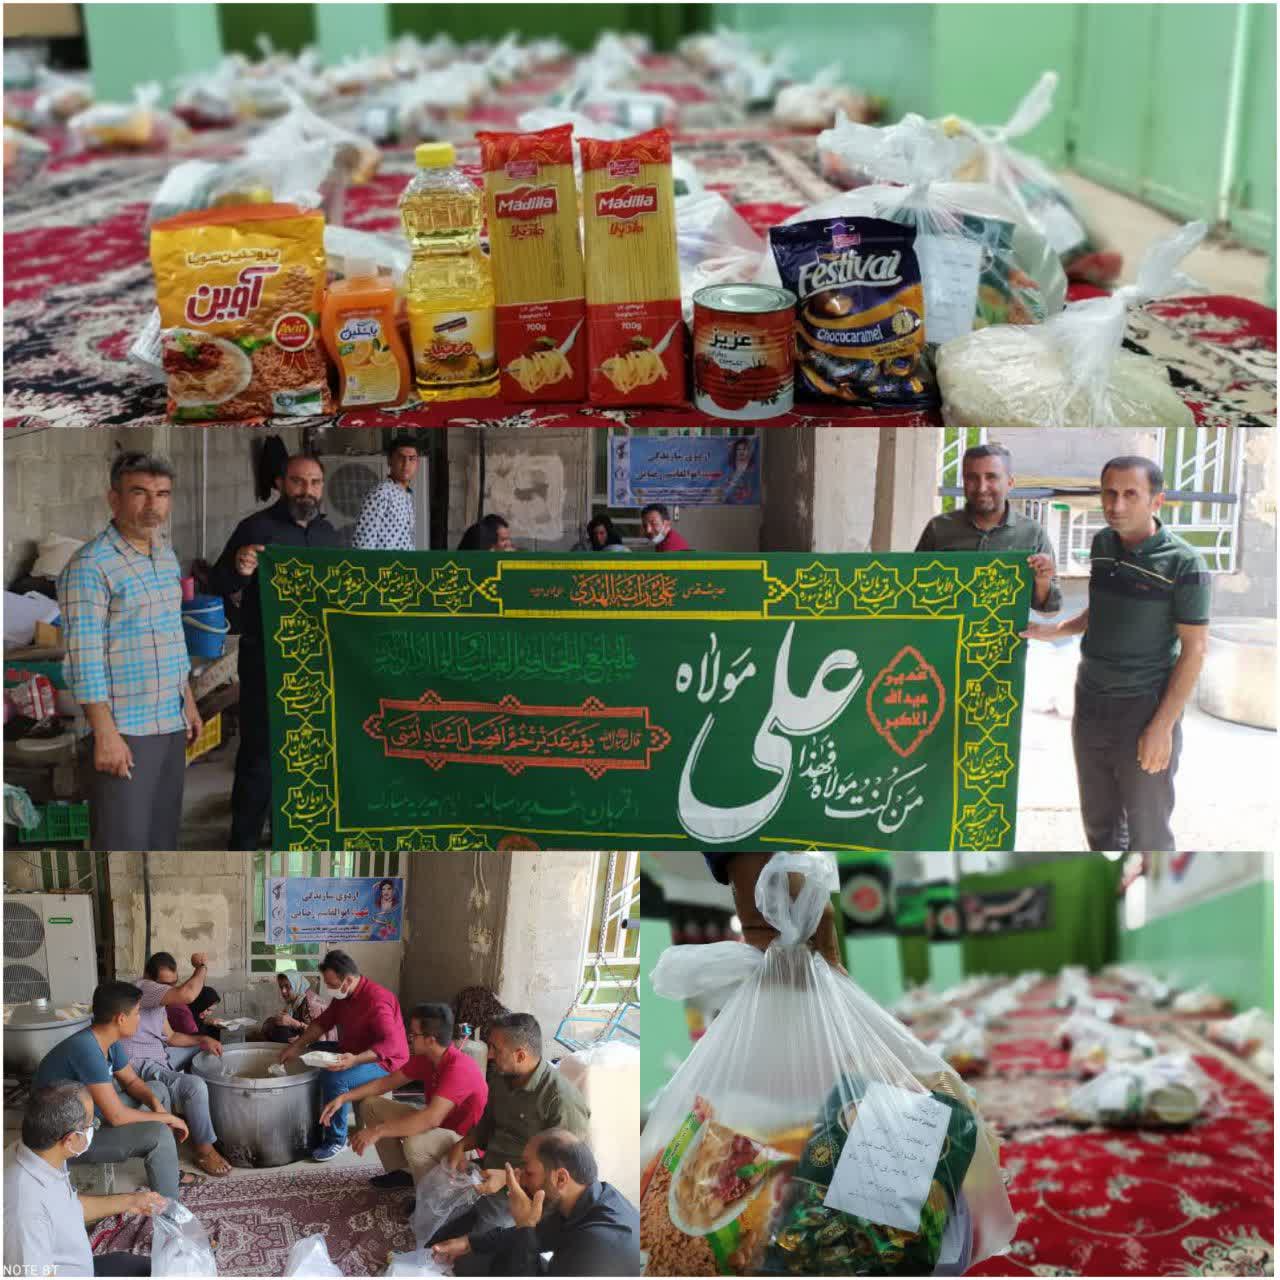 پخت و توزیع 1500 پرس غذا و همچنین 140 بسته مواد غذایی توسط فرهنگیان و مردم علامرودشت در روز عید غدیر بین نیازمندان